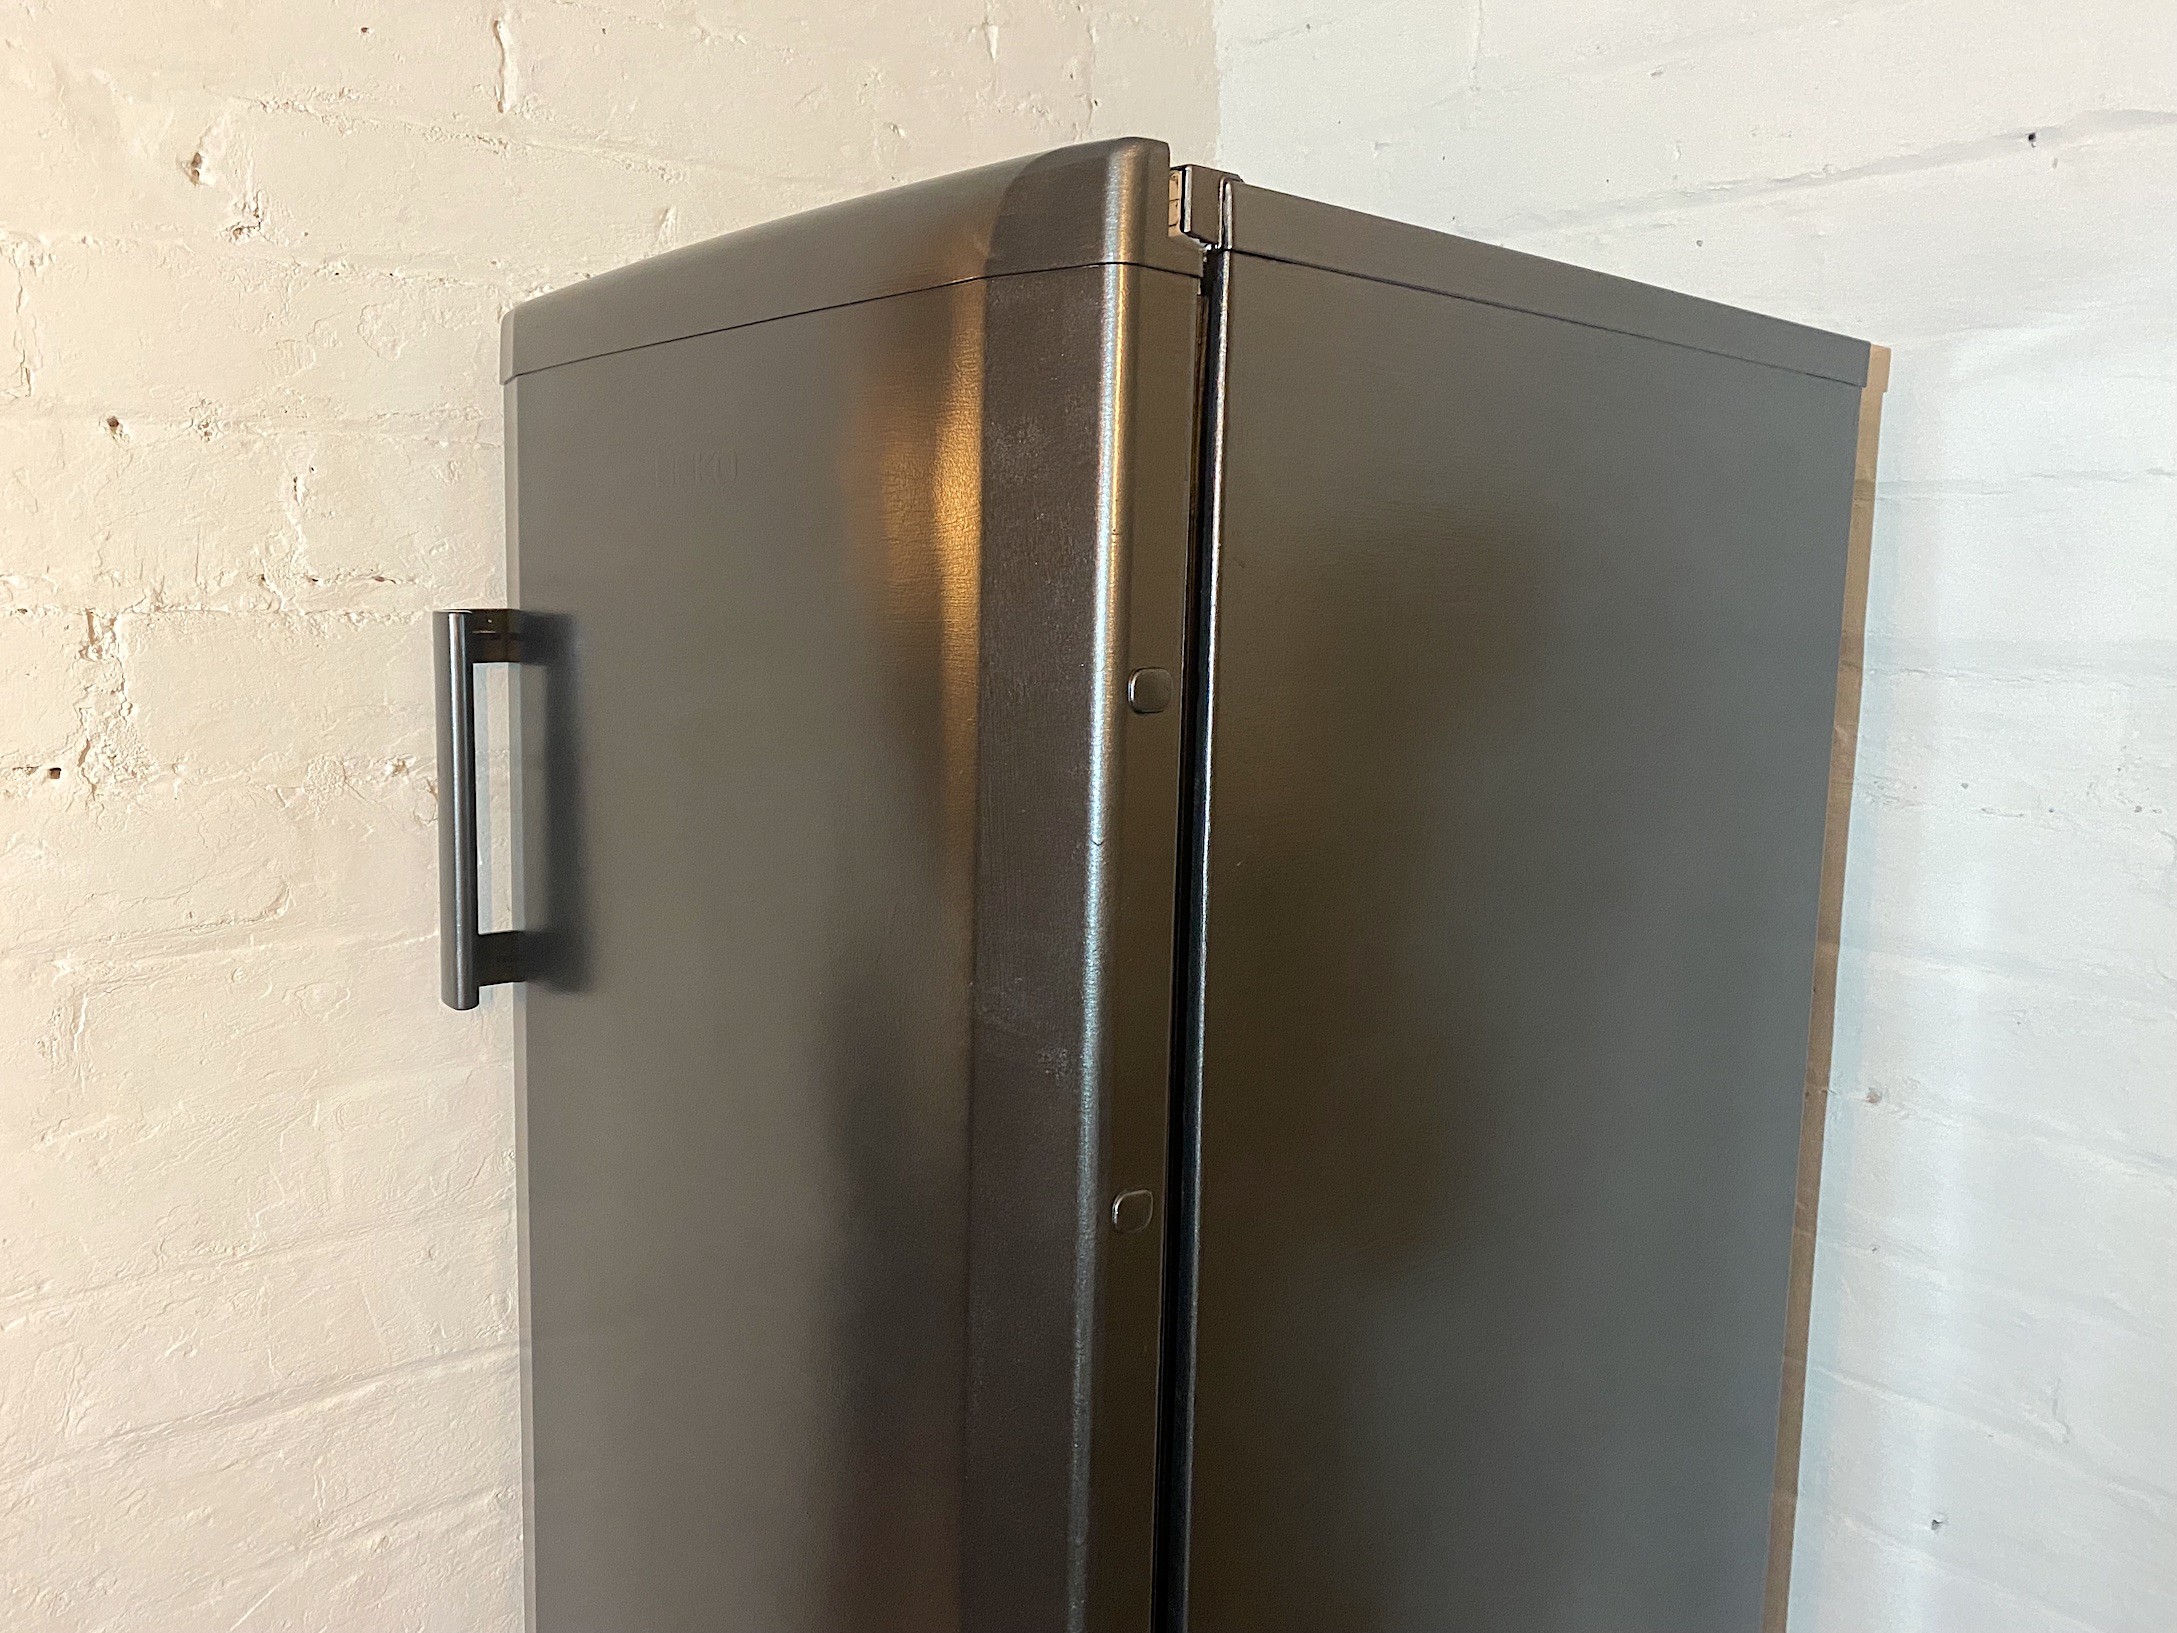 V33 painted fridge freezer